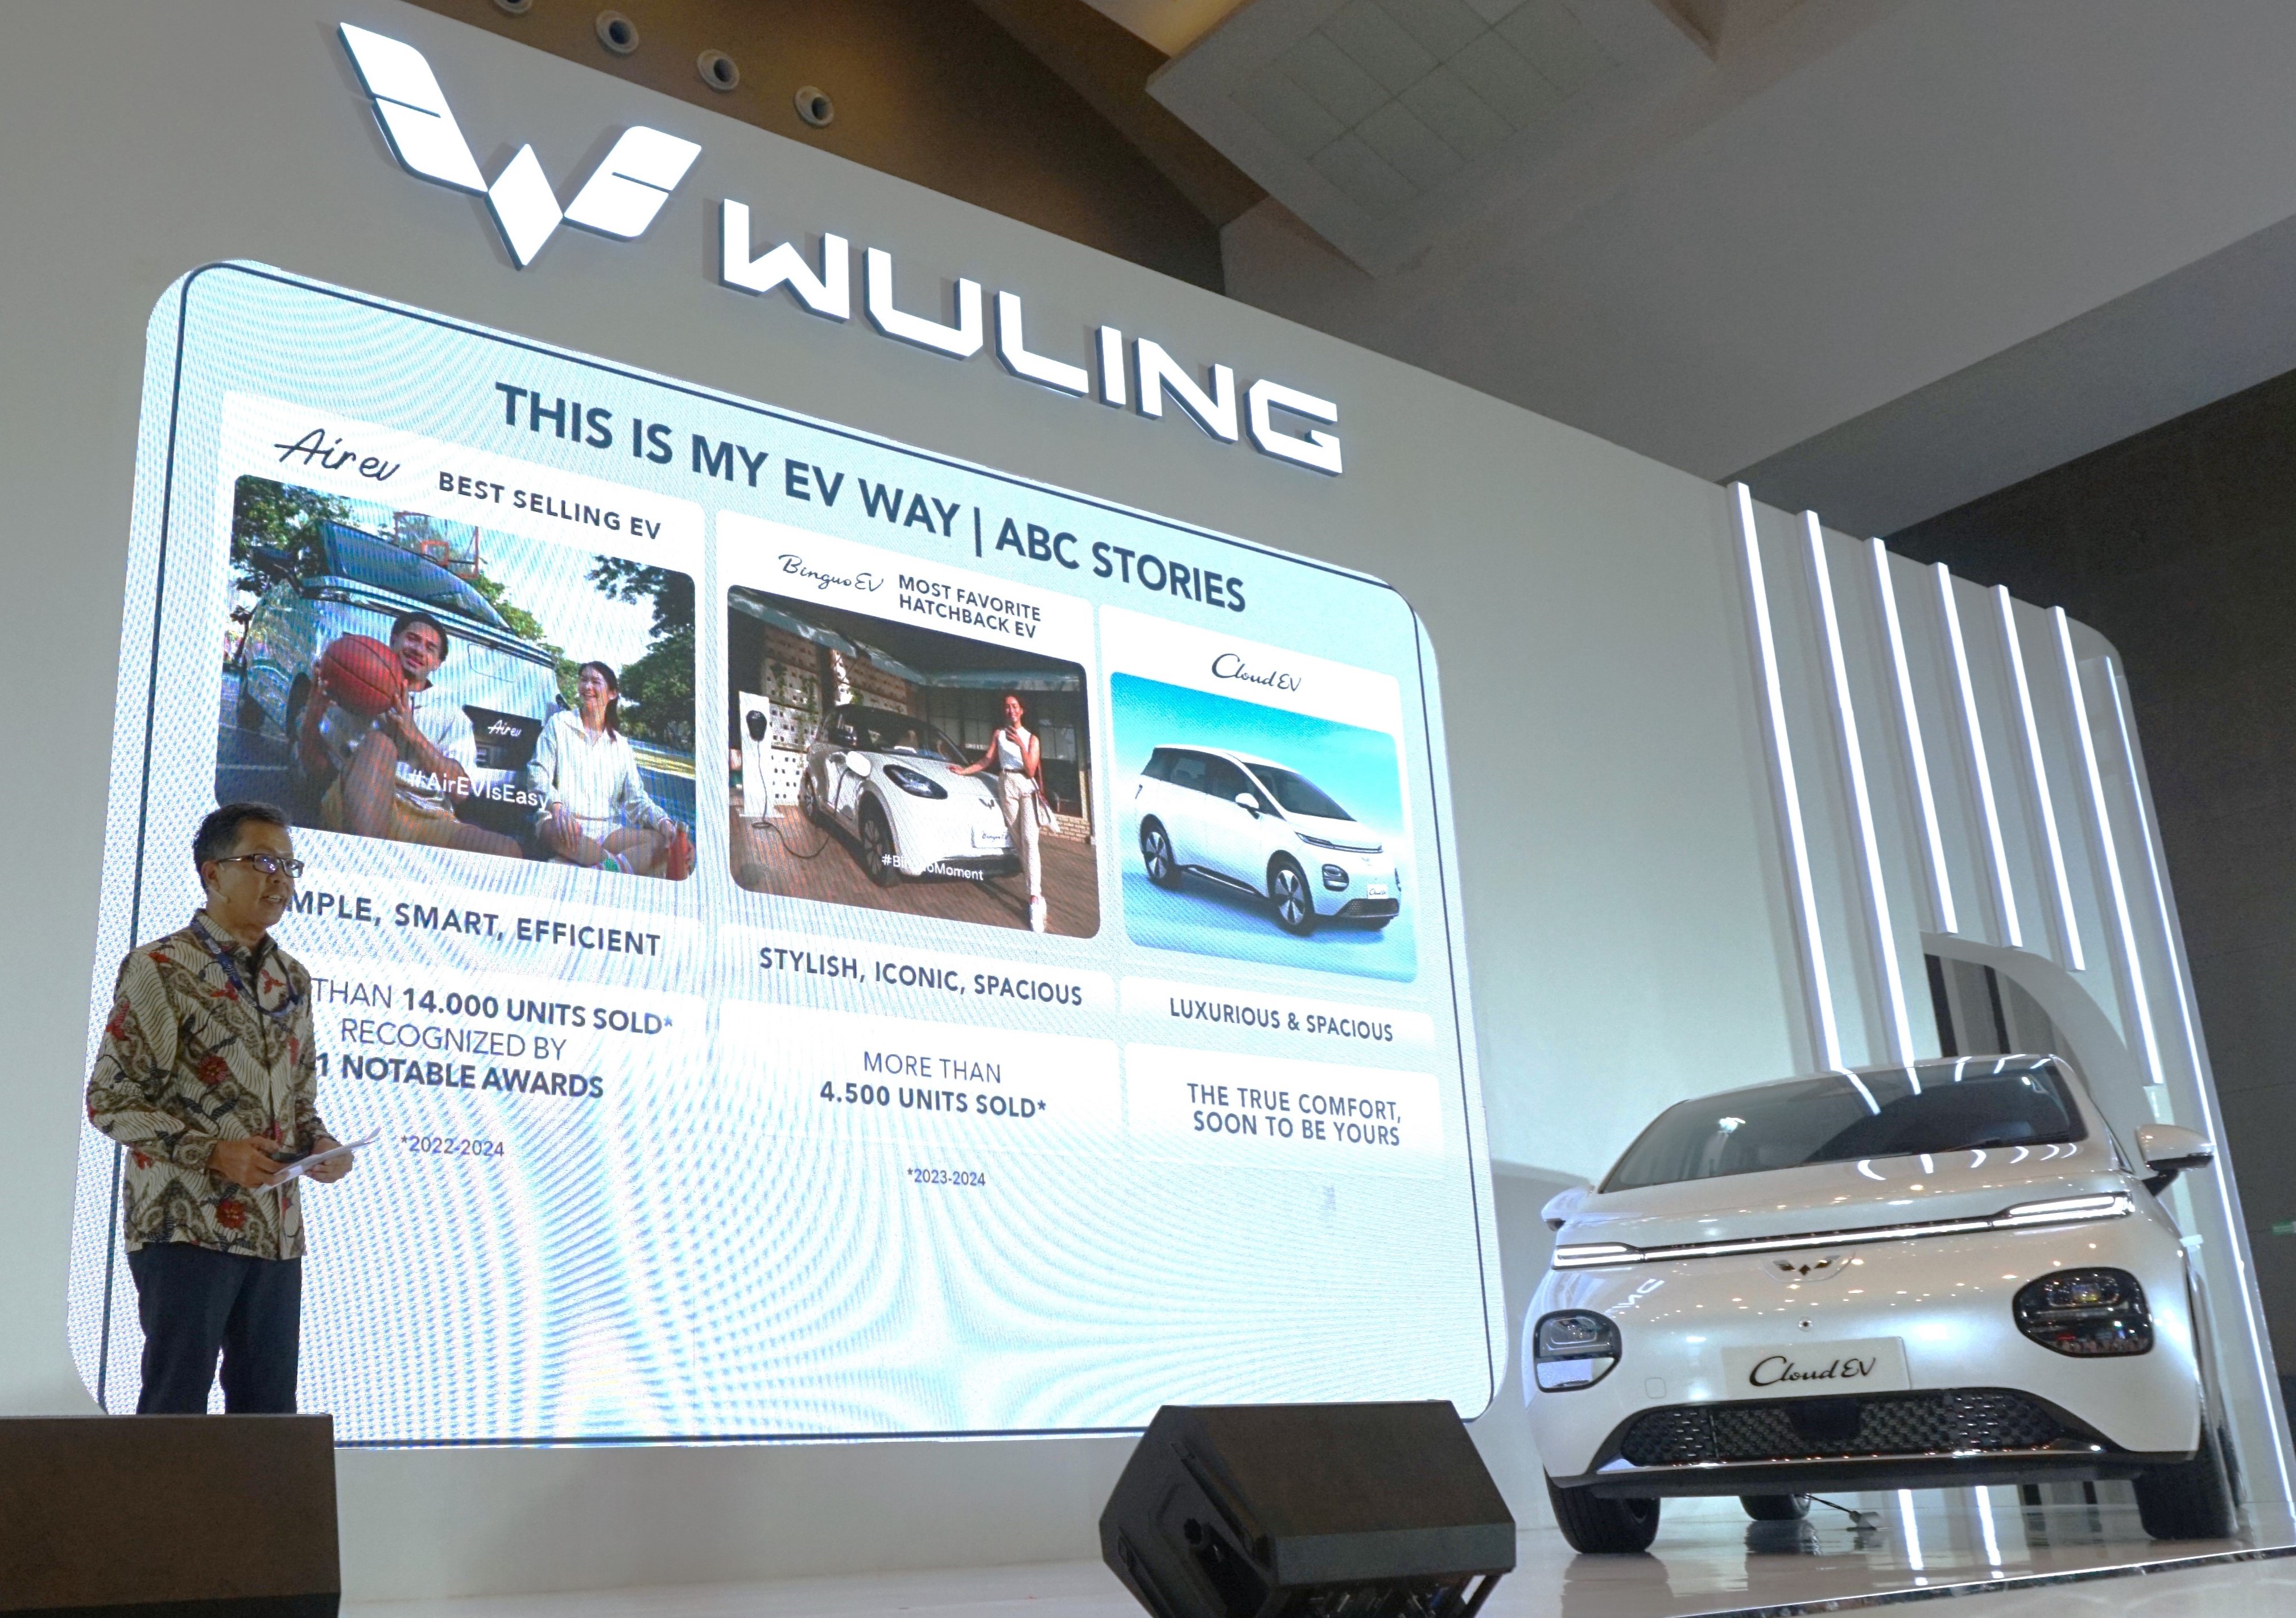 Image ABC Stories Membawa Wuling Menjadi Brand EV No.1 di Indonesia Hingga Q1 2024